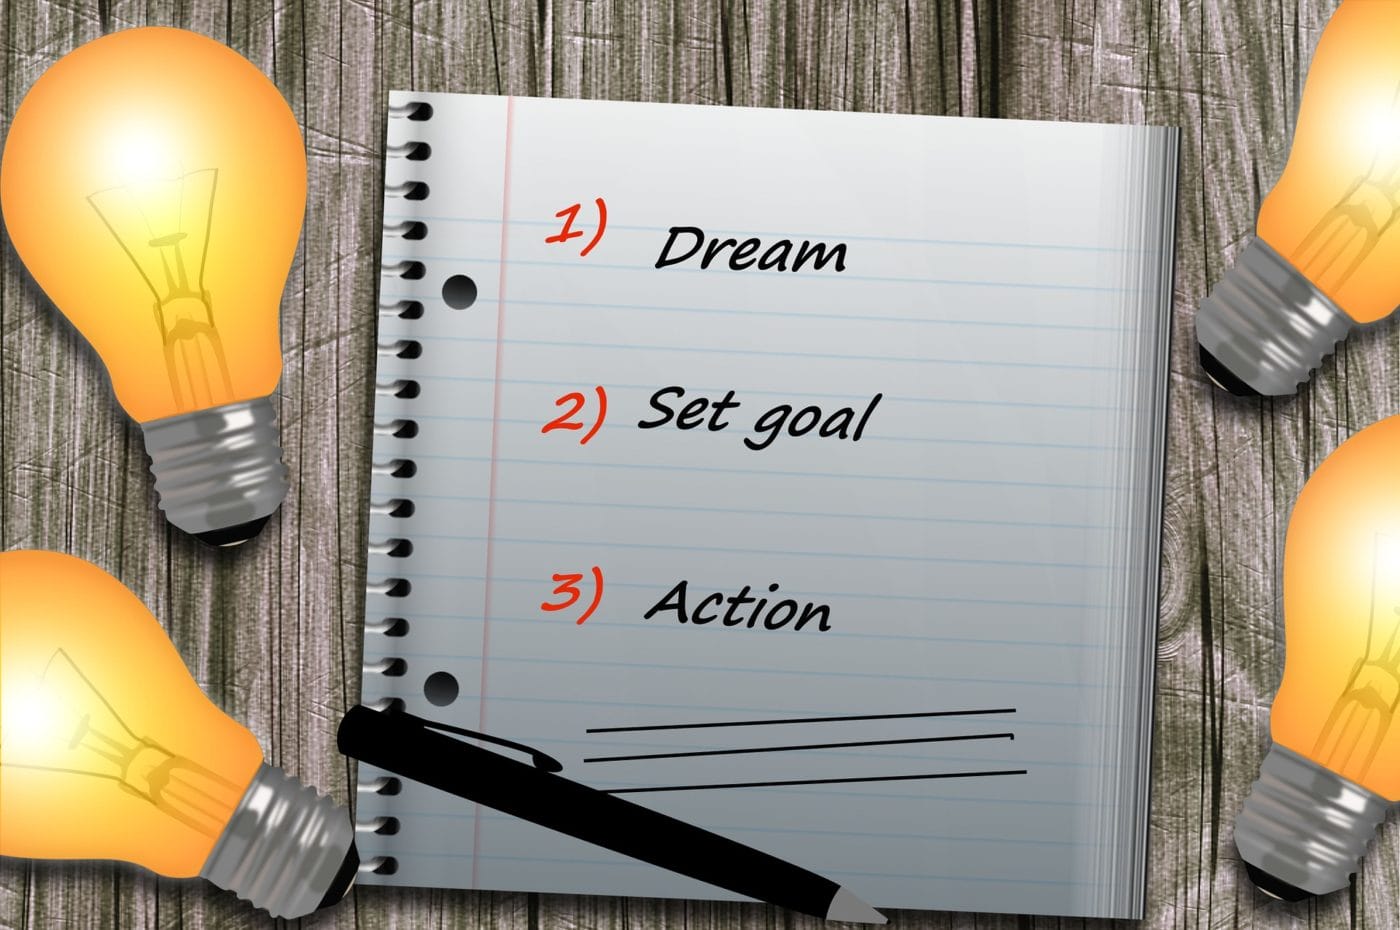 Goals written on paper: Dream, set goal, action